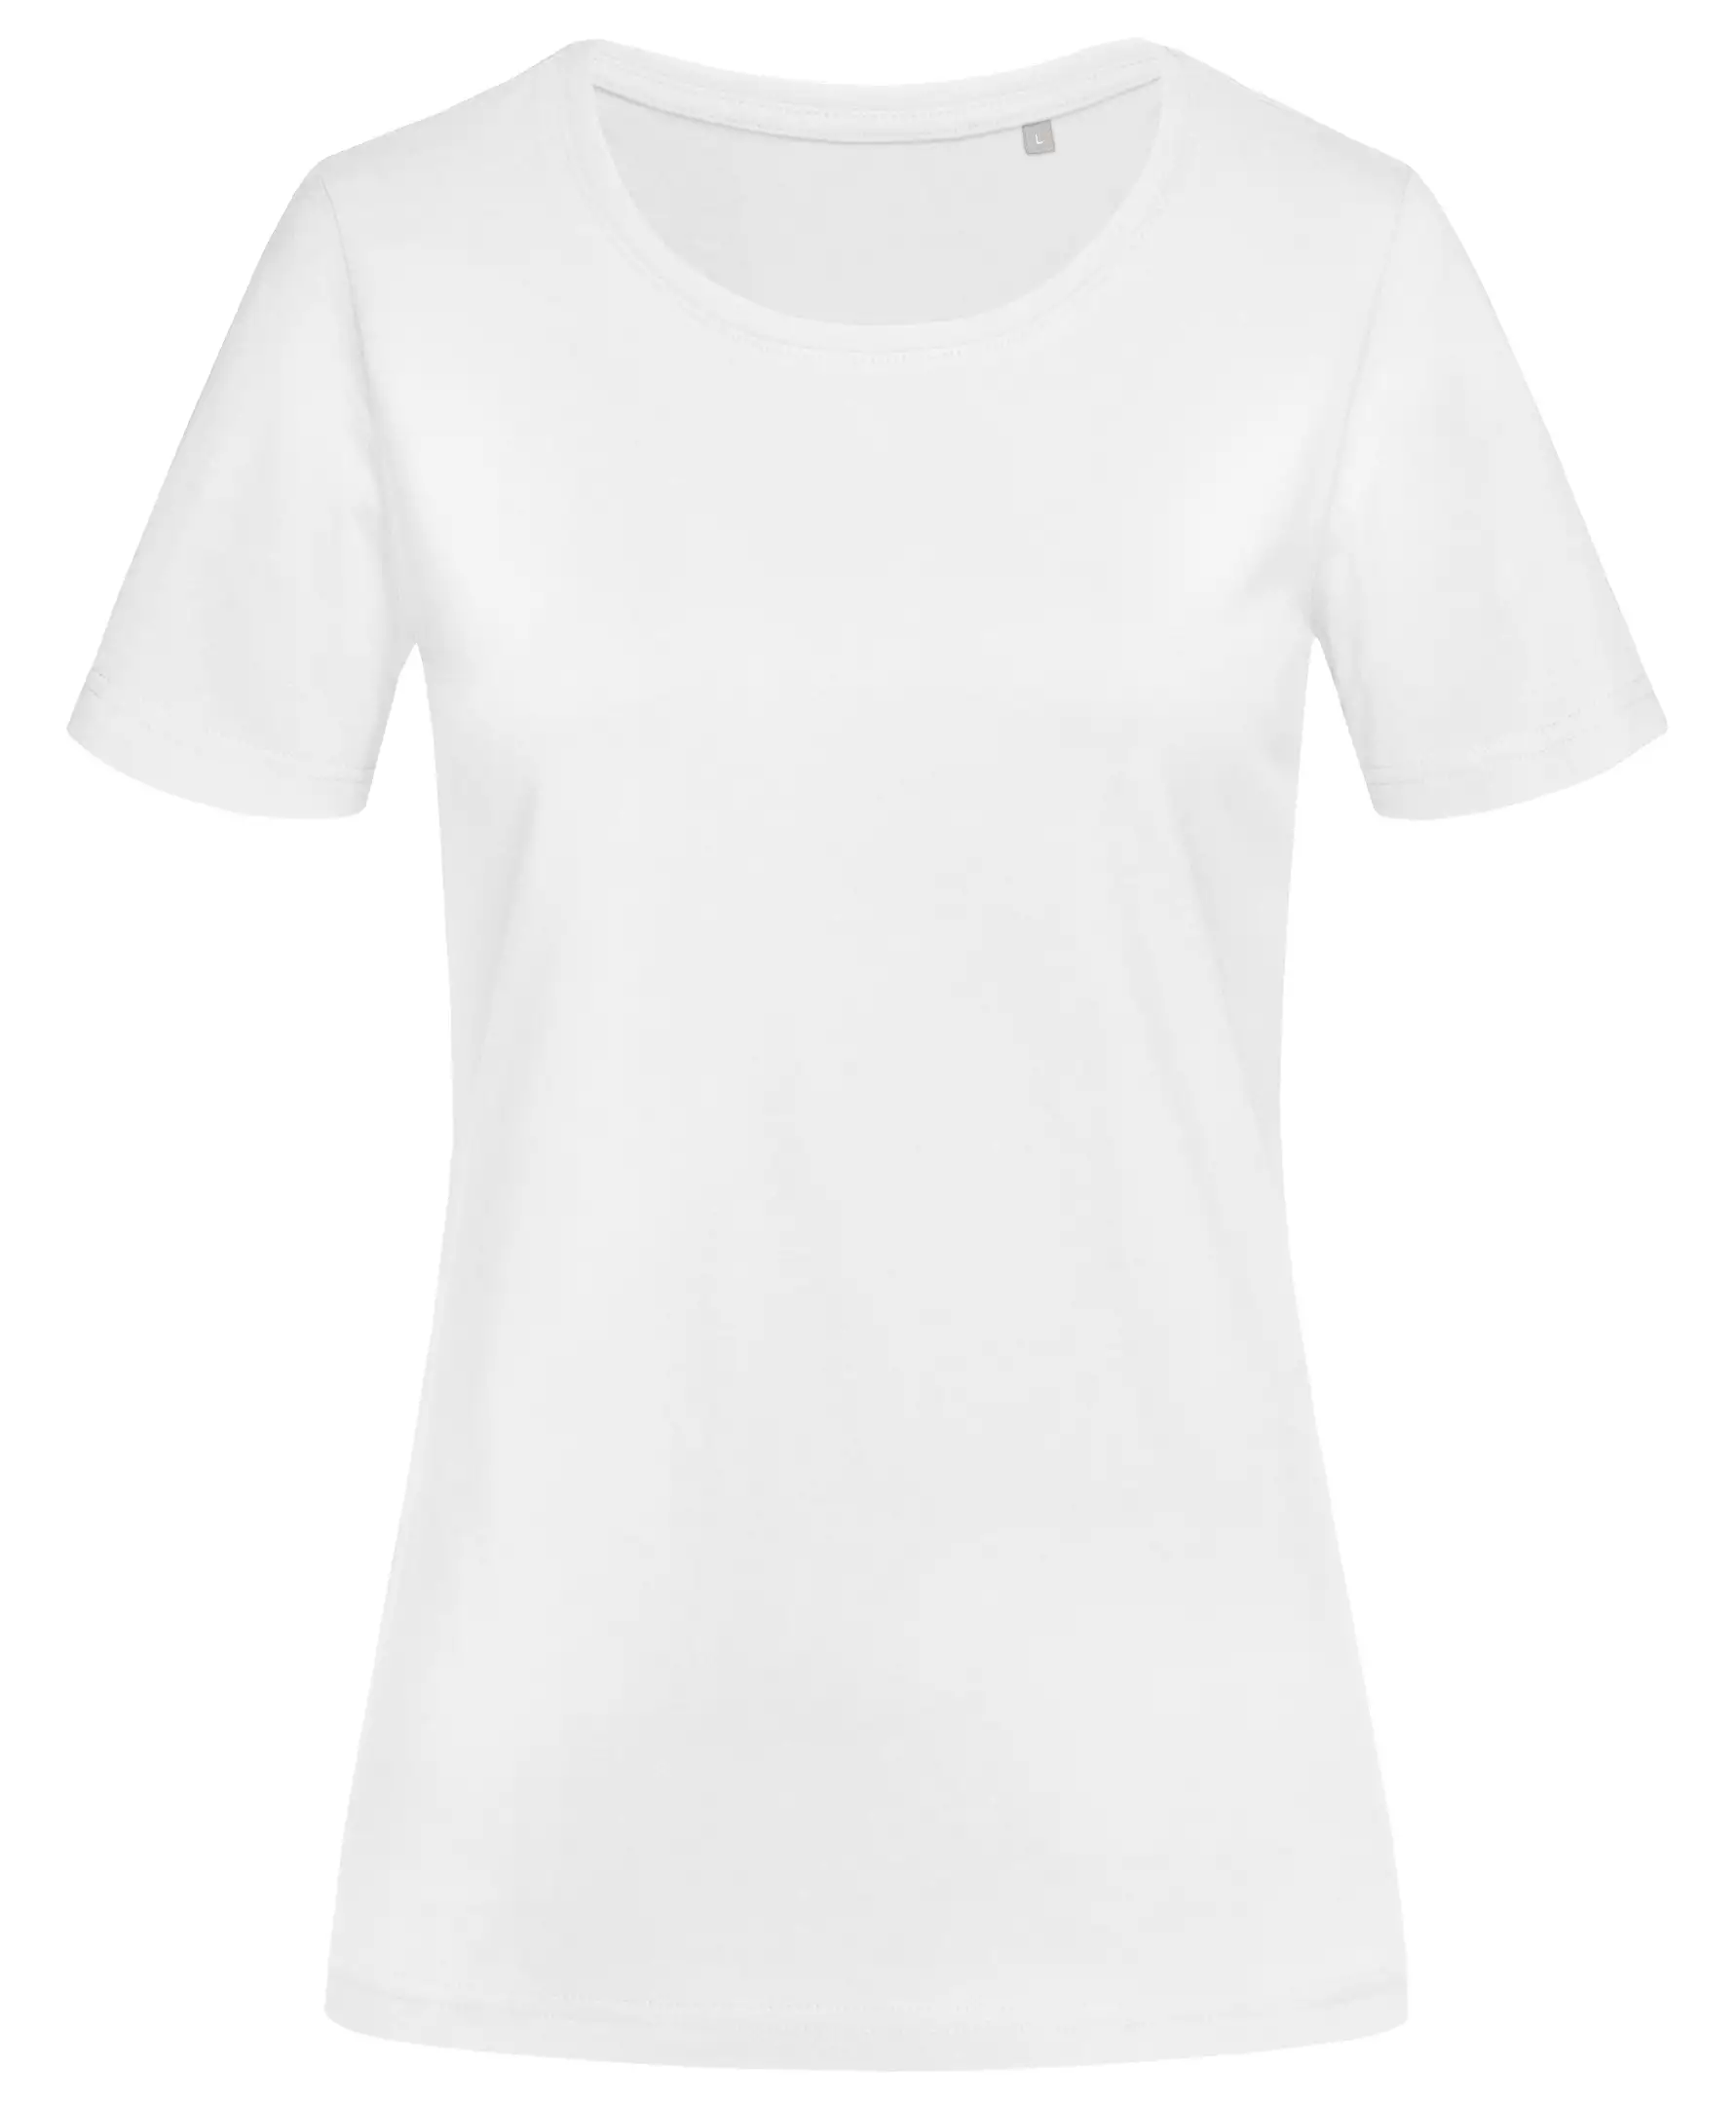 T-Shirt Donna Manica Corta Cotone Personalizzata - Stedman